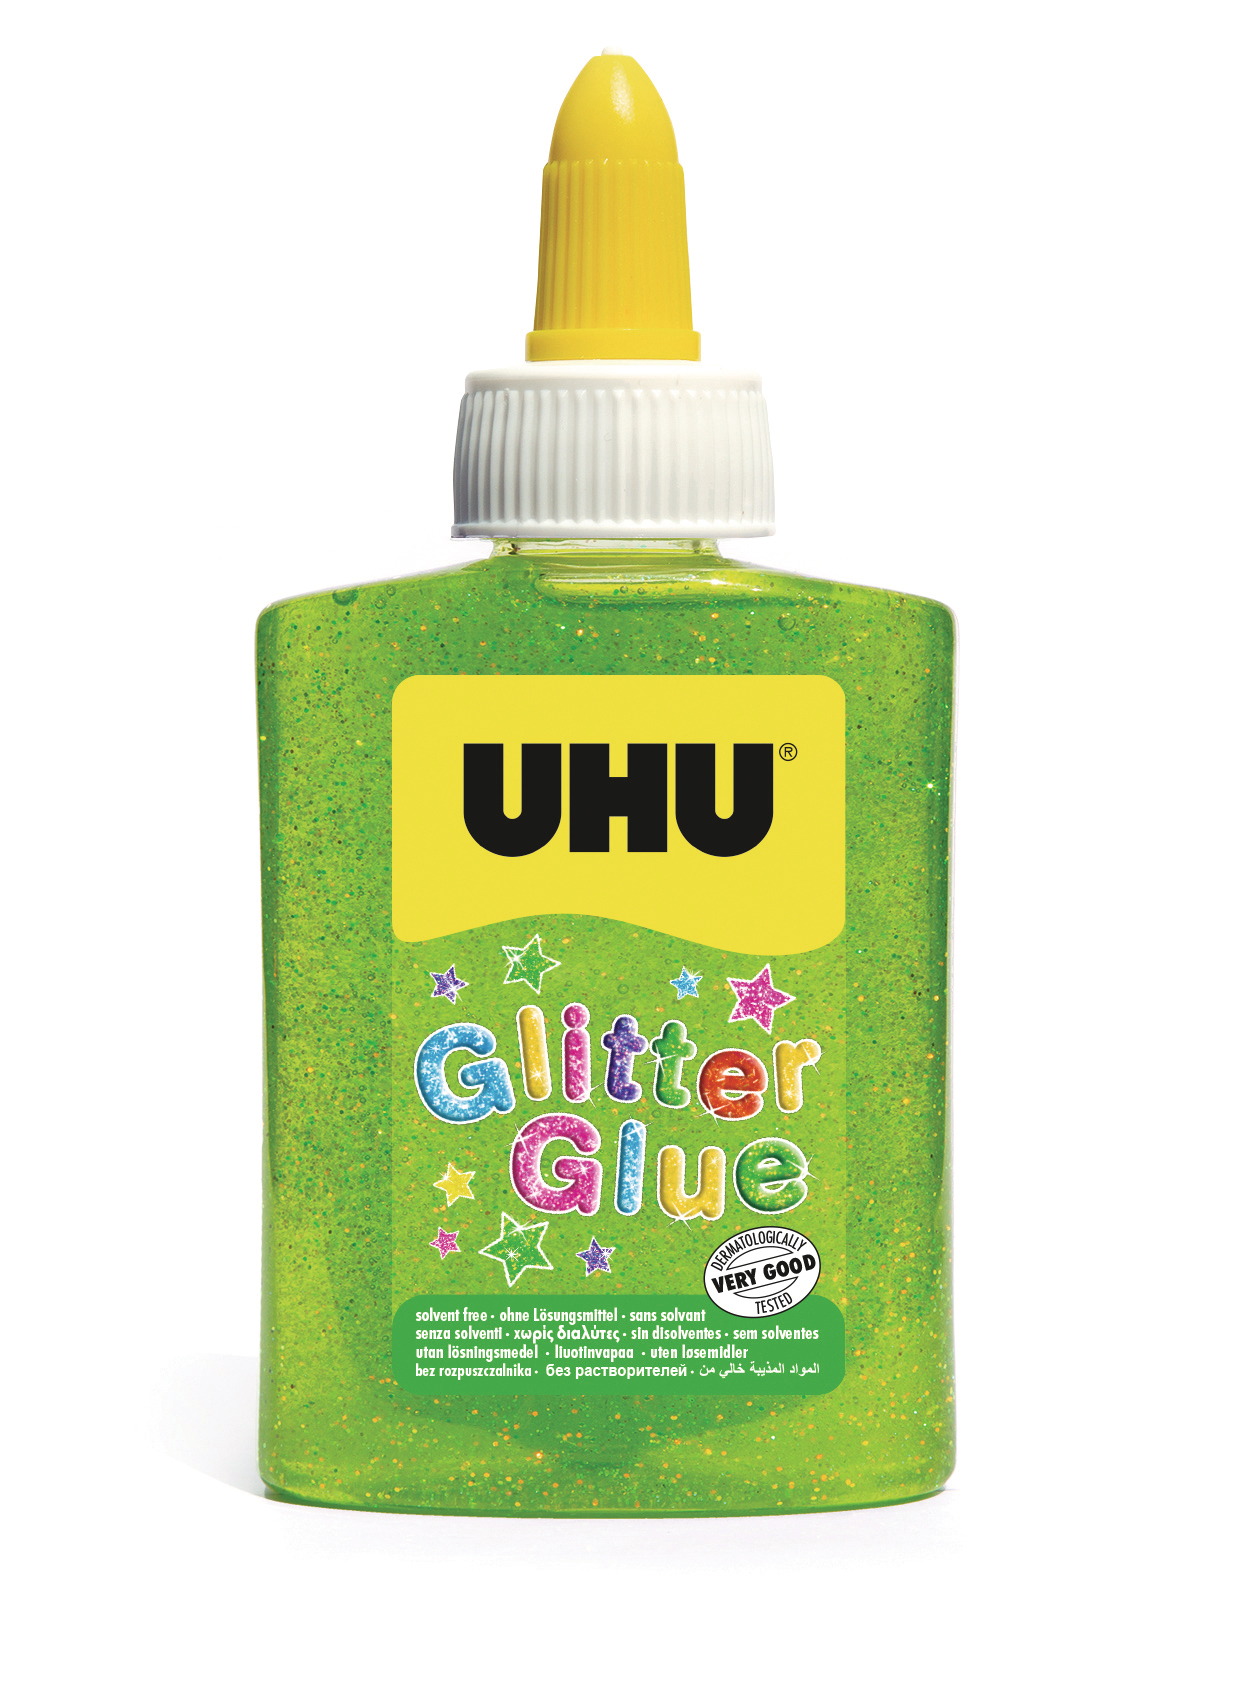 UHU Glitter Glue 49960 vert